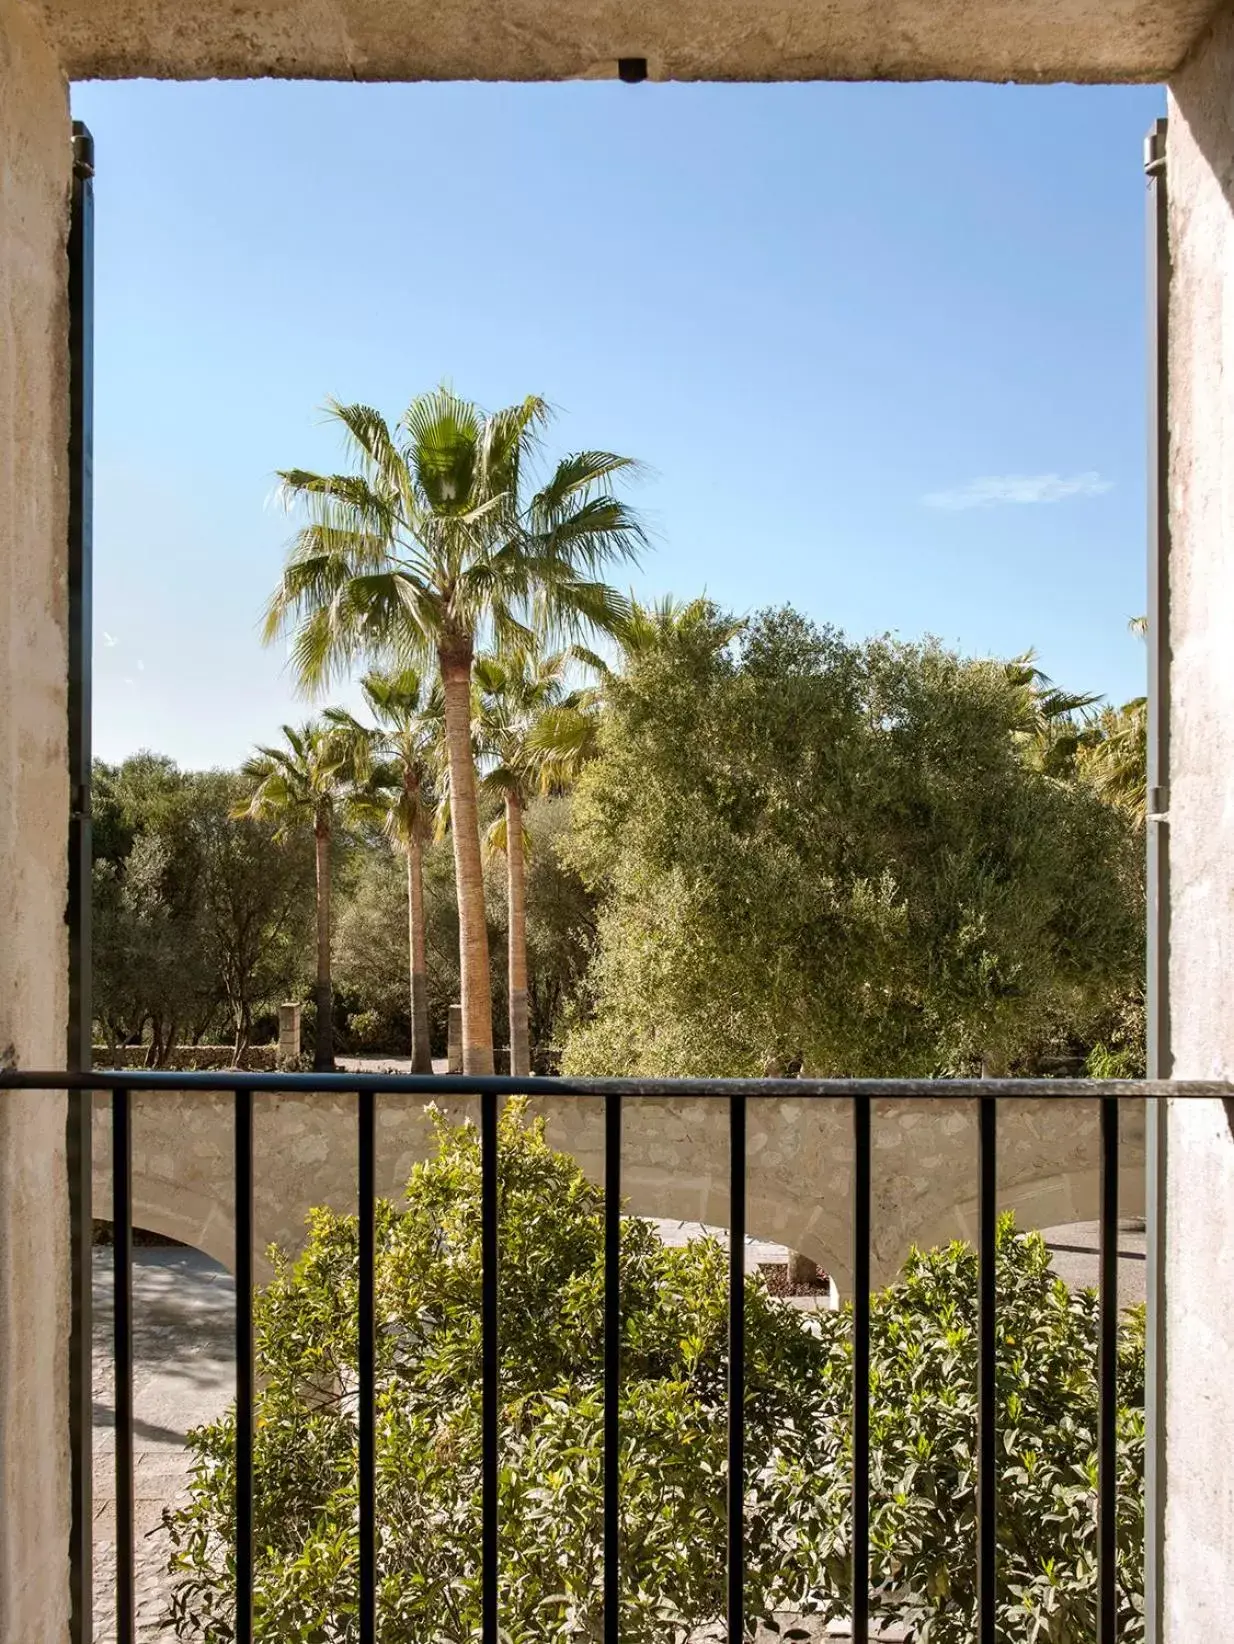 Finca Serena Mallorca, Small Luxury Hotels